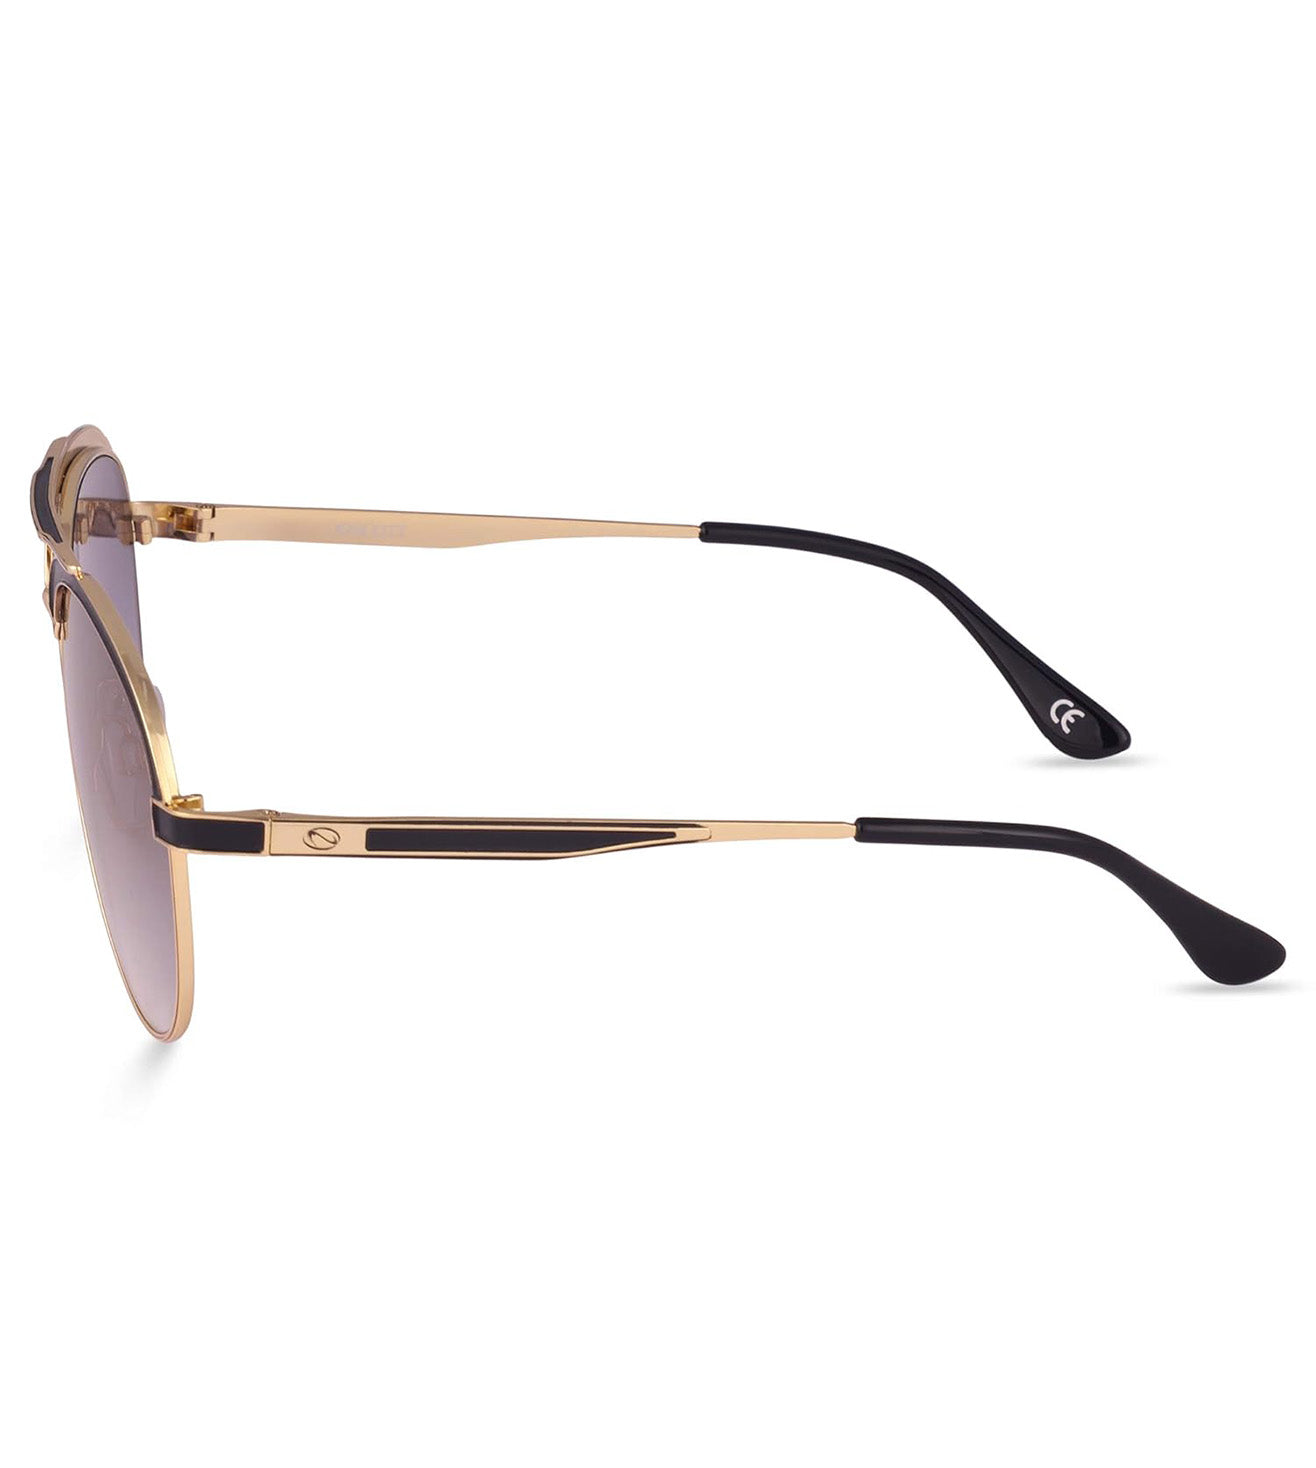 Scott Unisex Grey Aviator Sunglasses